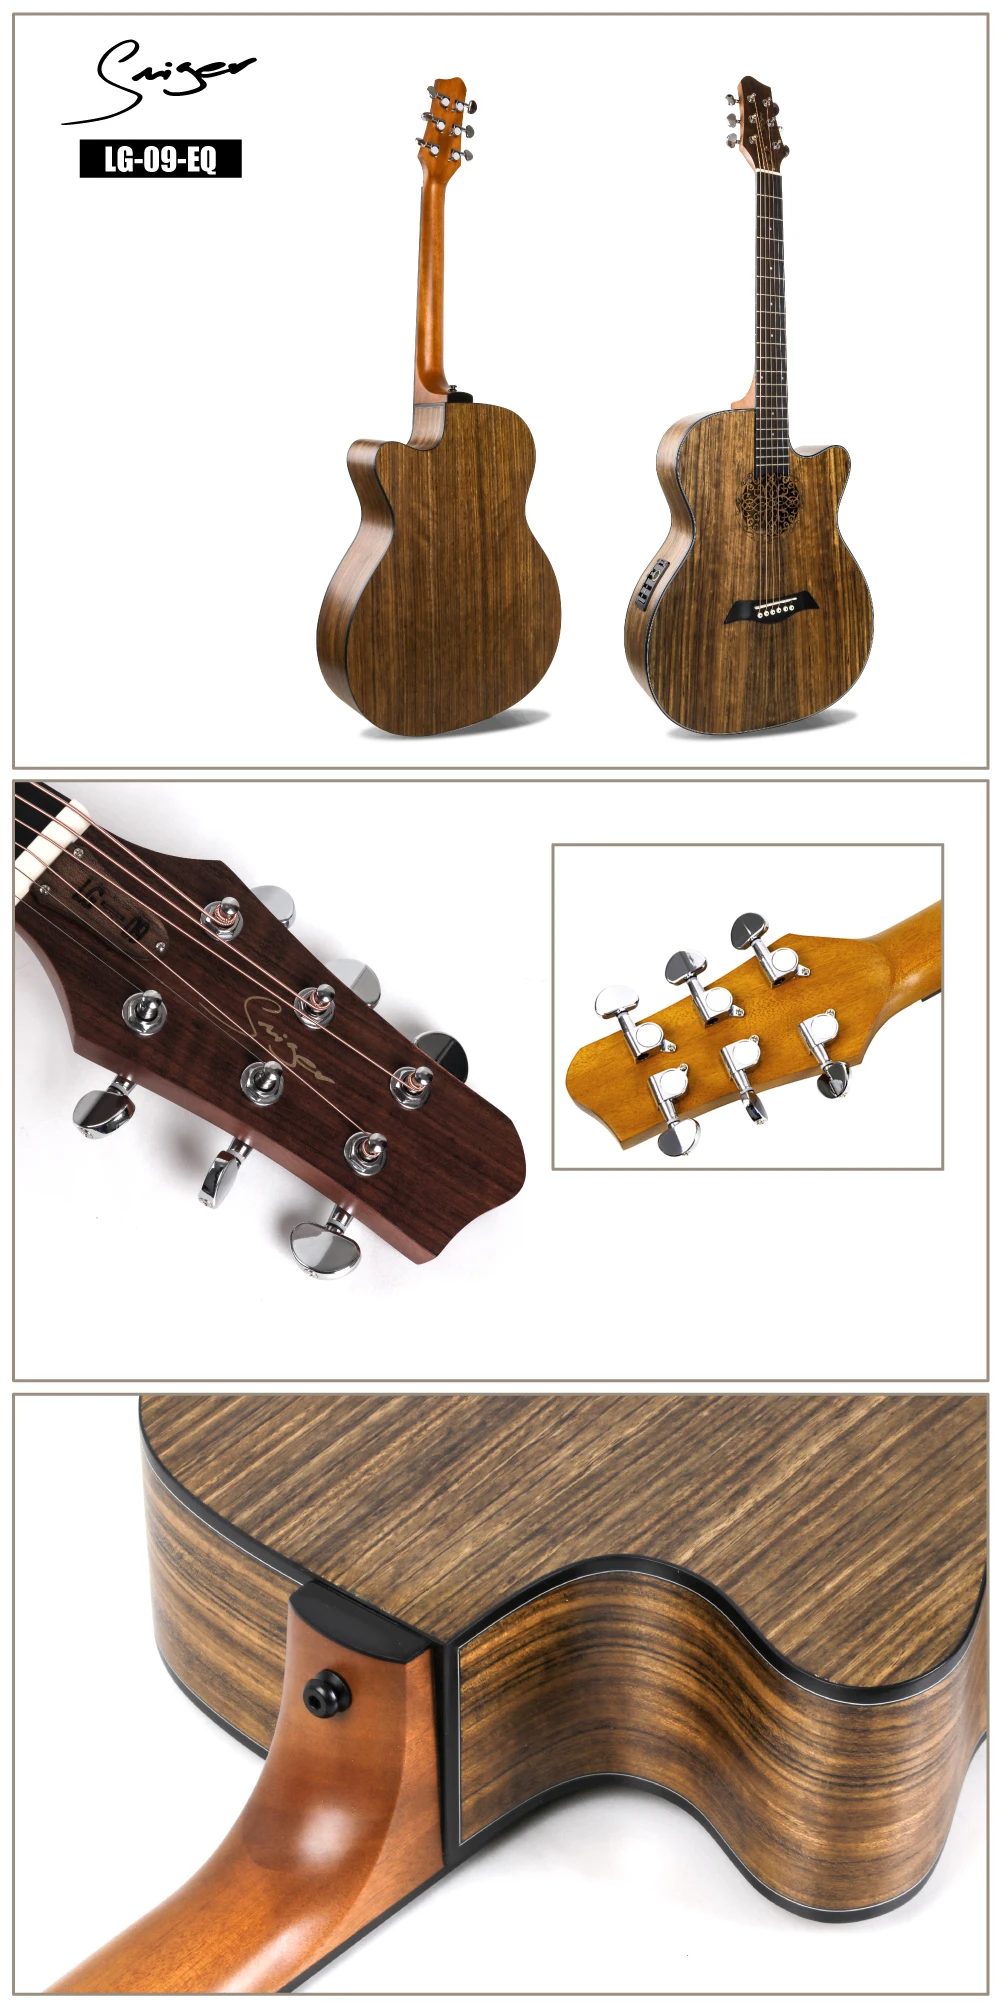 Гитары электроакустическая гитара 40 дюймов A-Body Cutaway поп-фолк пользовательский пикап гравировальный процесс полный орех Ель Цвет дерева